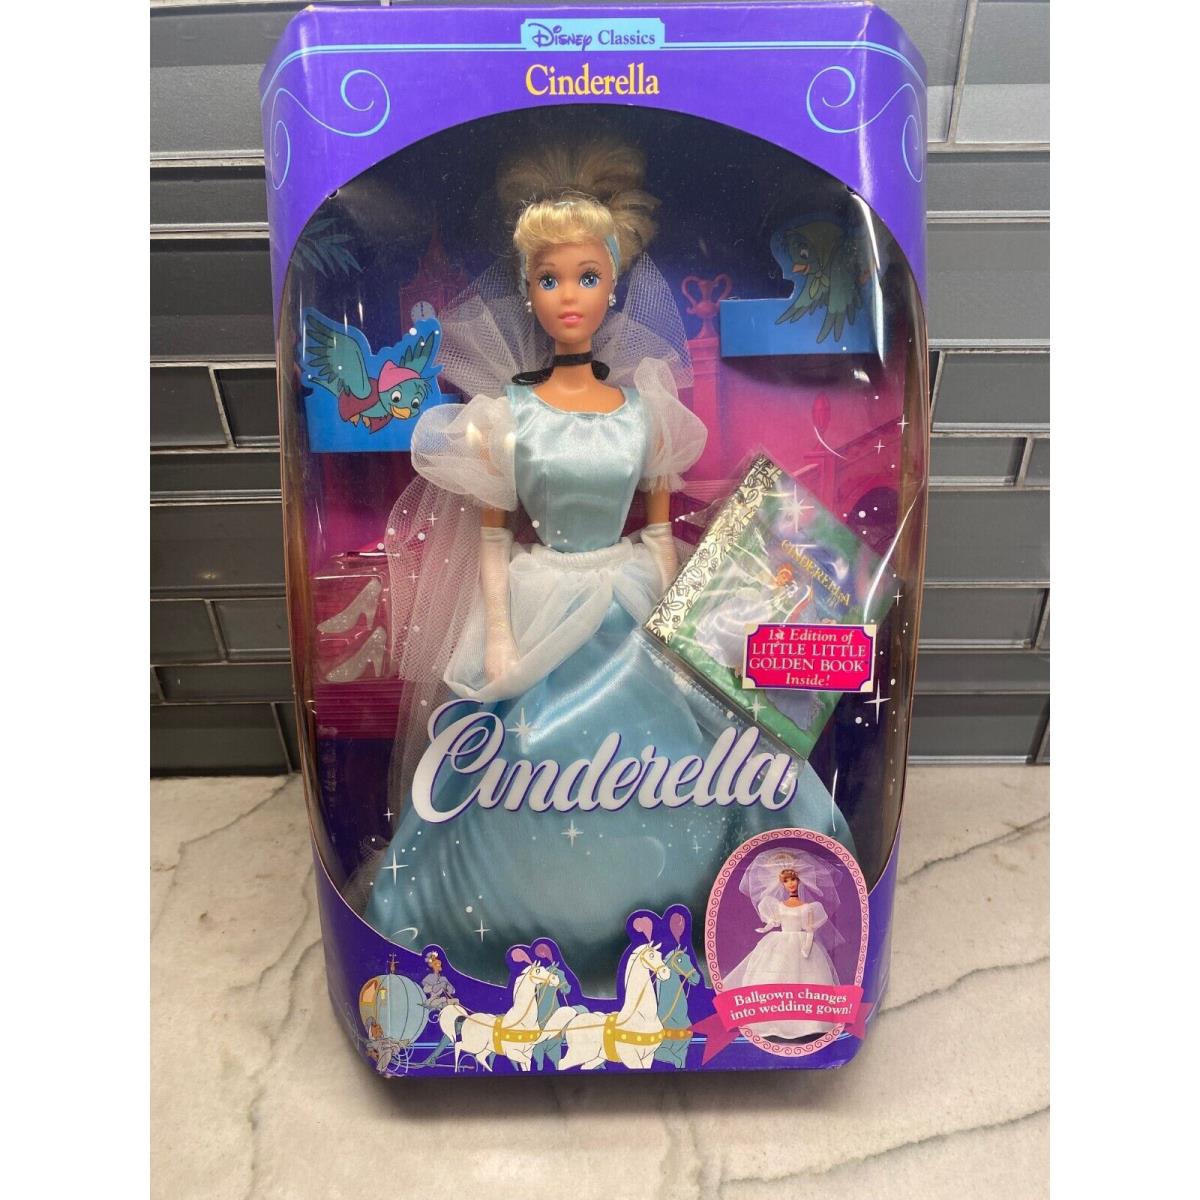 Disney Classics Cinderella Ballgown Changes Into Wedding Gown 1991 Mattel 1624